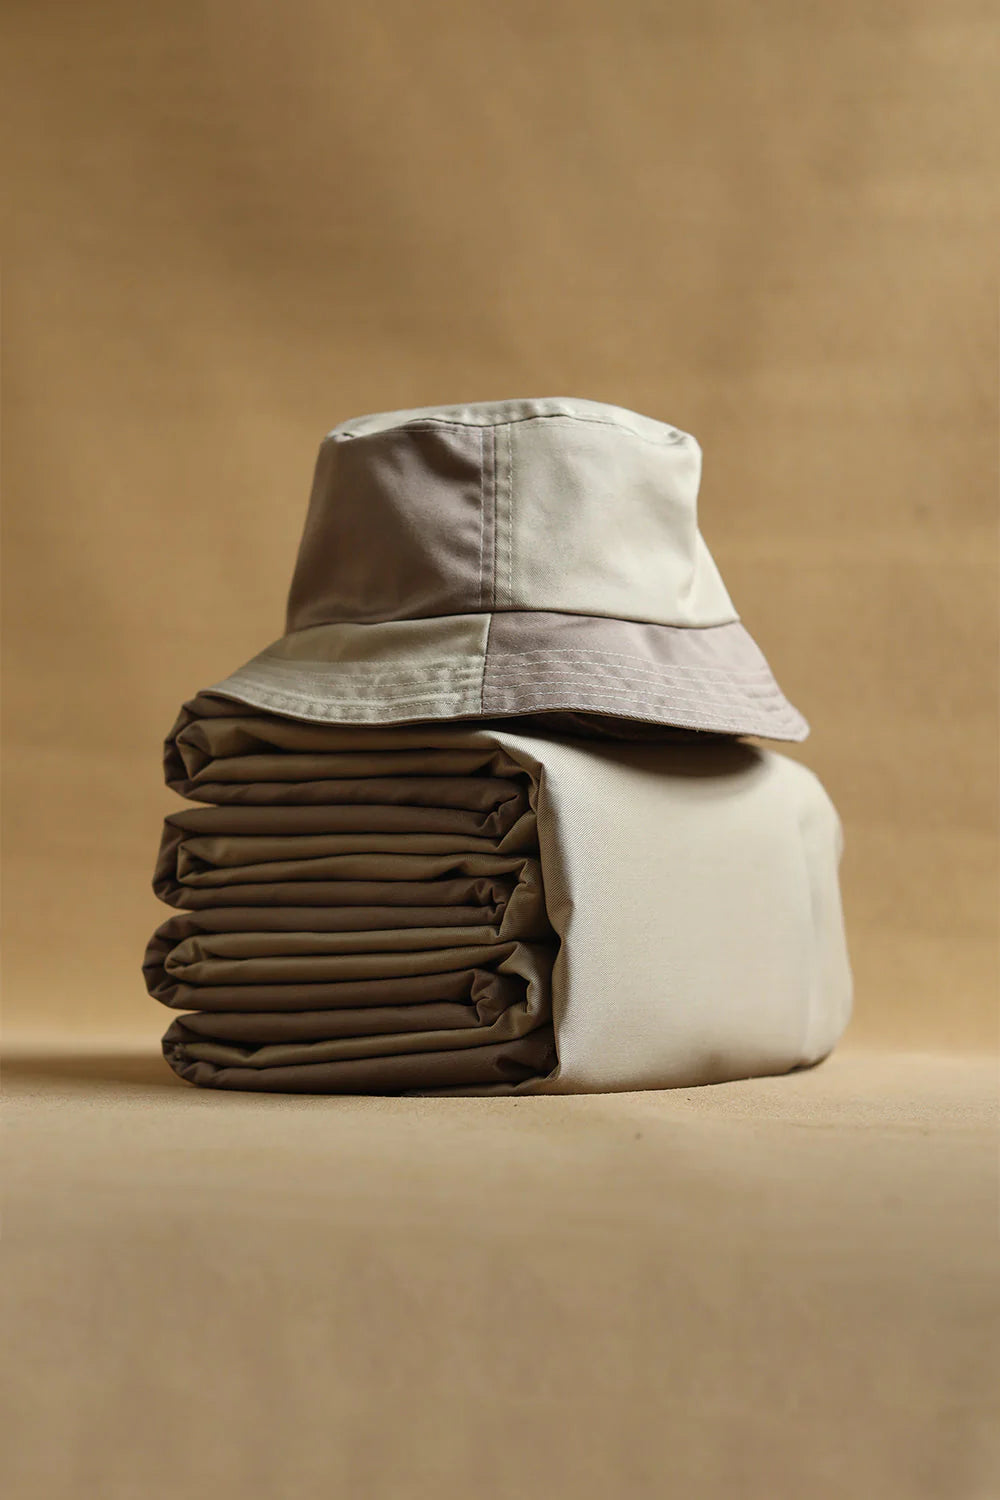 BUCKET HAT SEWING PATTERN